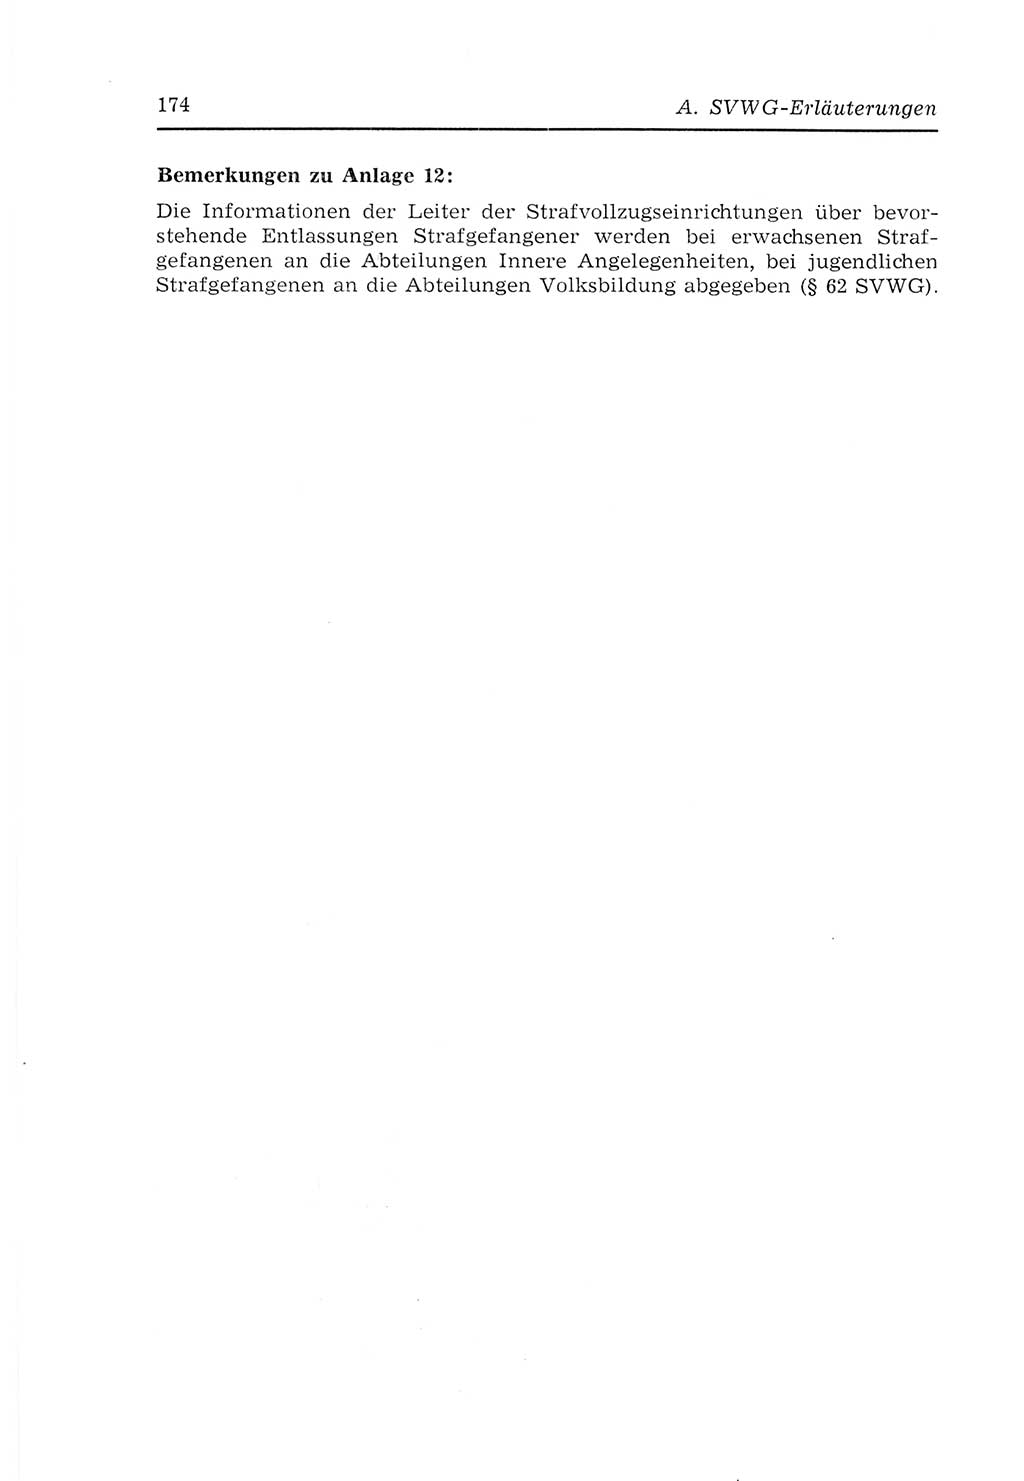 Strafvollzugs- und Wiedereingliederungsgesetz (SVWG) der Deutschen Demokratischen Republik (DDR) 1968, Seite 174 (SVWG DDR 1968, S. 174)